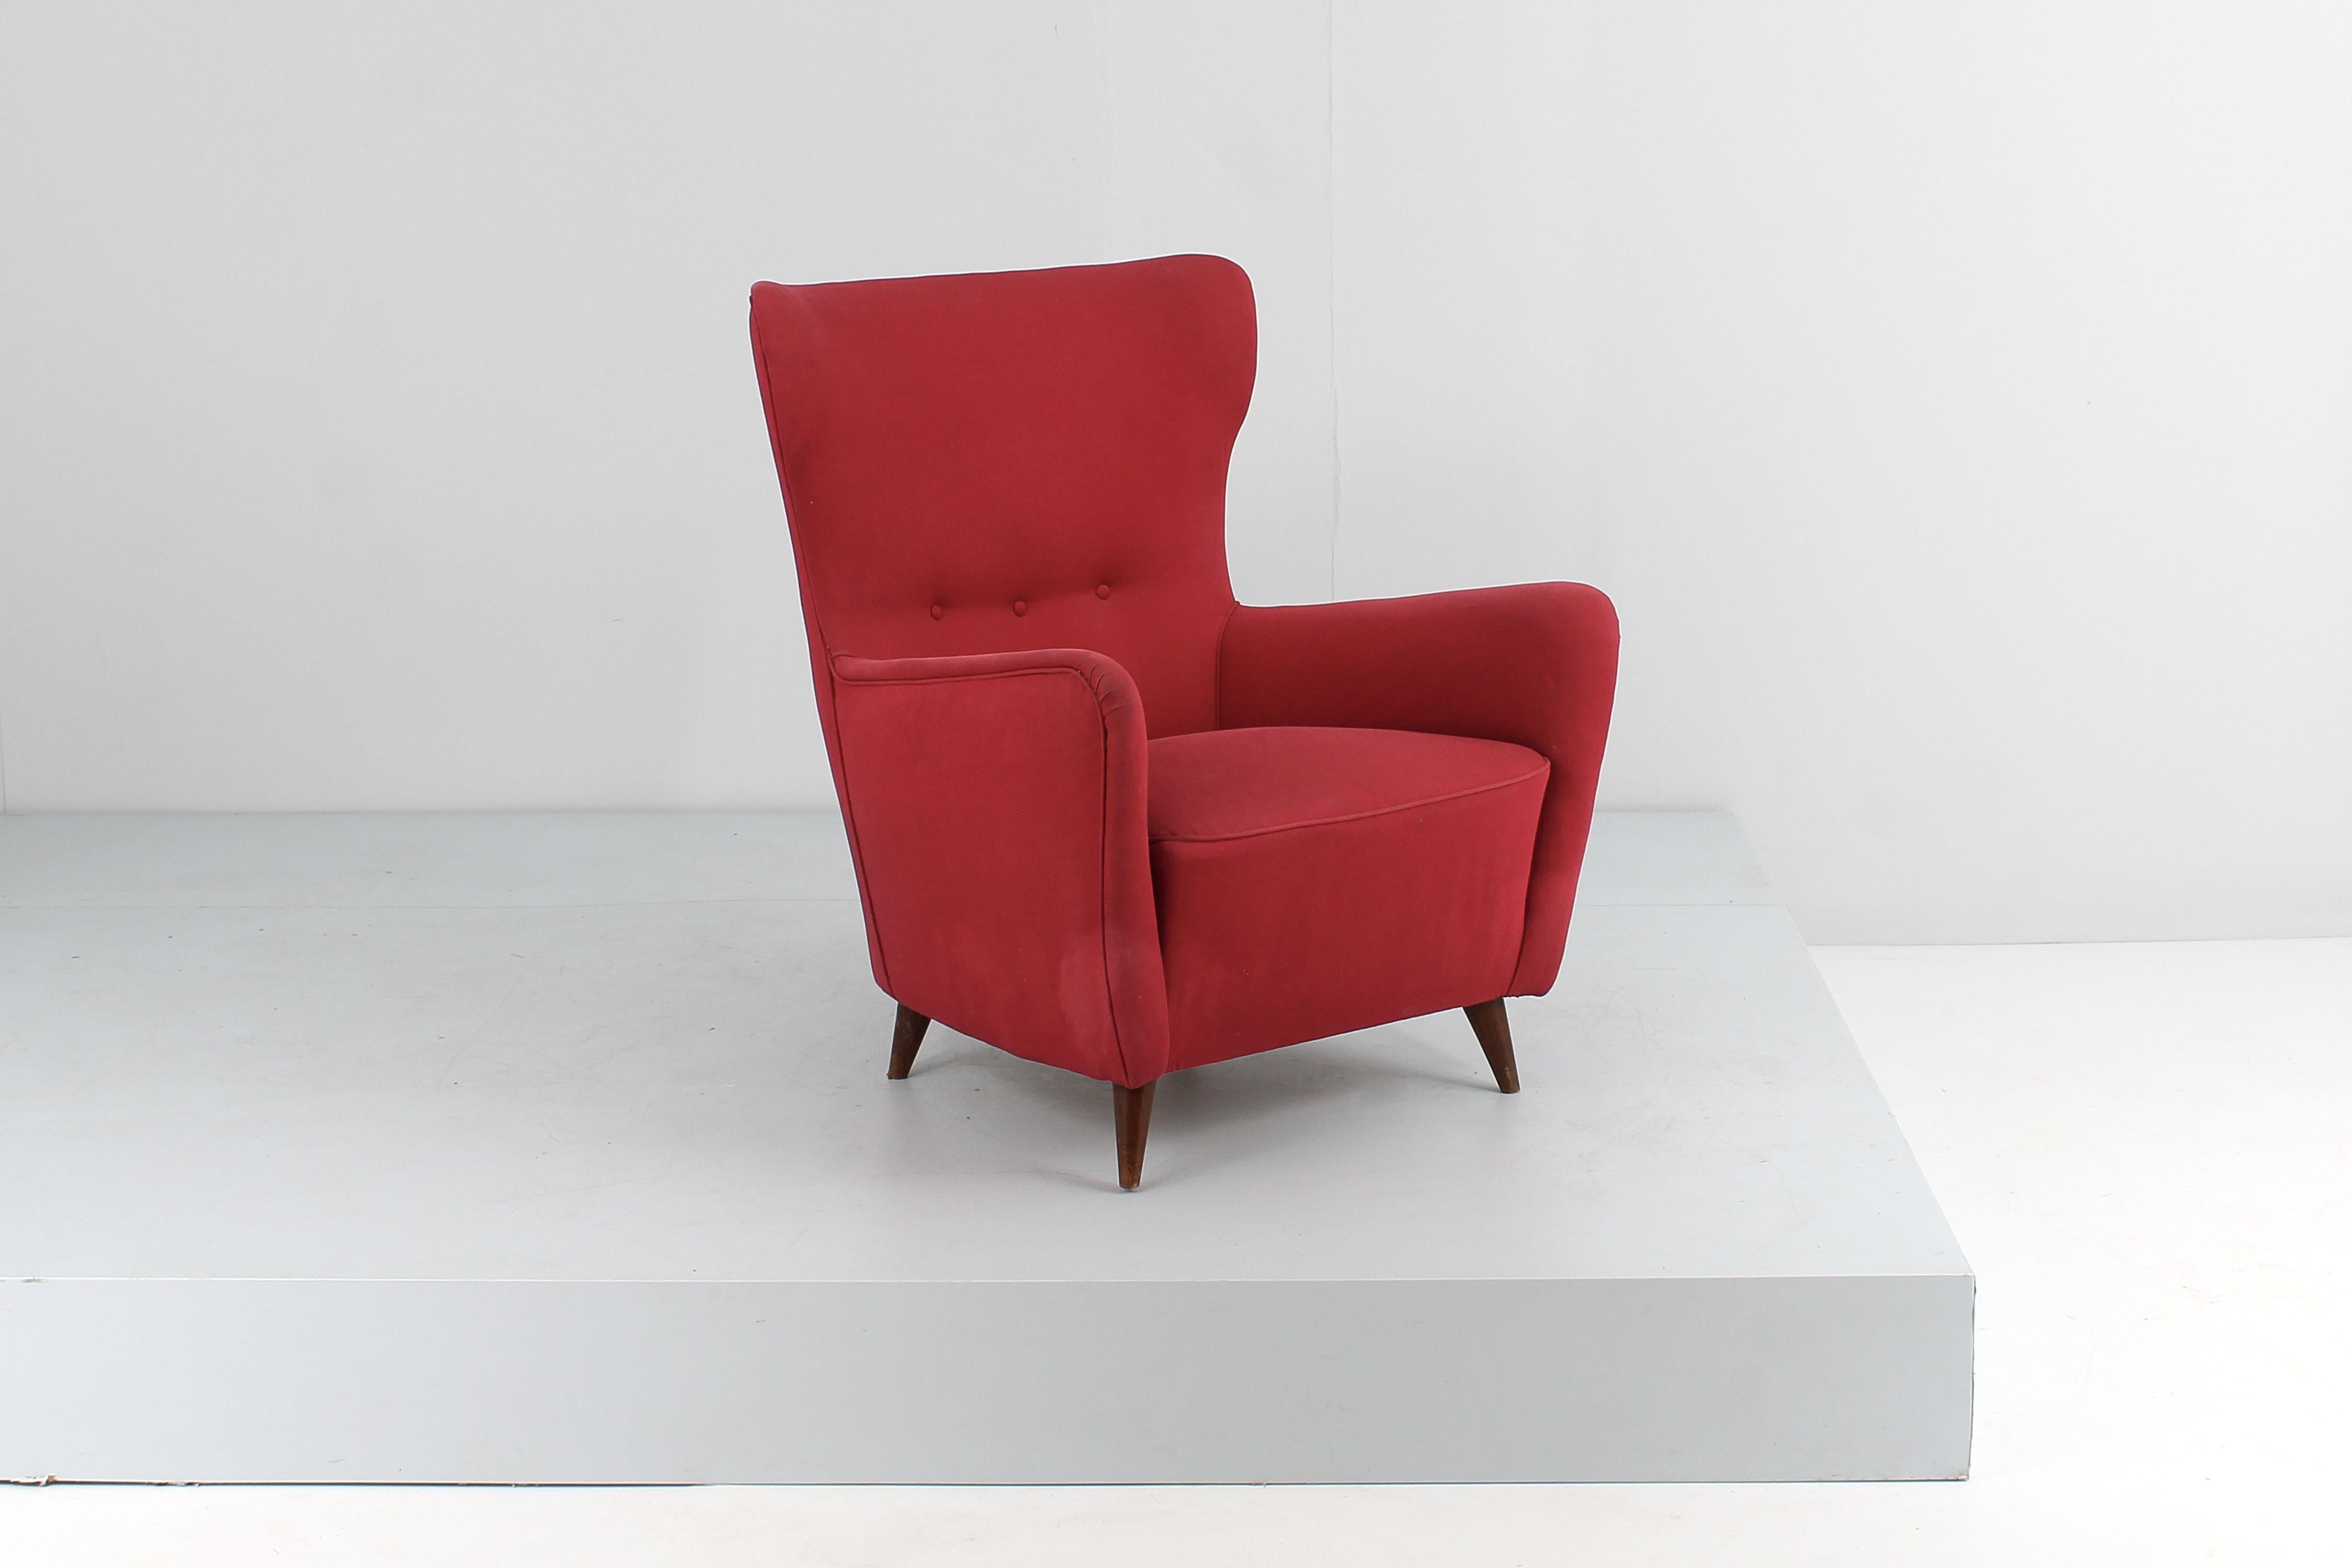 Très beau fauteuil avec structure en bois, revêtement en tissu rouge et pieds coniques en bois. Style Giò Ponti, manifacture italienne dans les années 50
Usure conforme à l'âge et à l'utilisation.

En vente il y a aussi un fauteuil du même style,